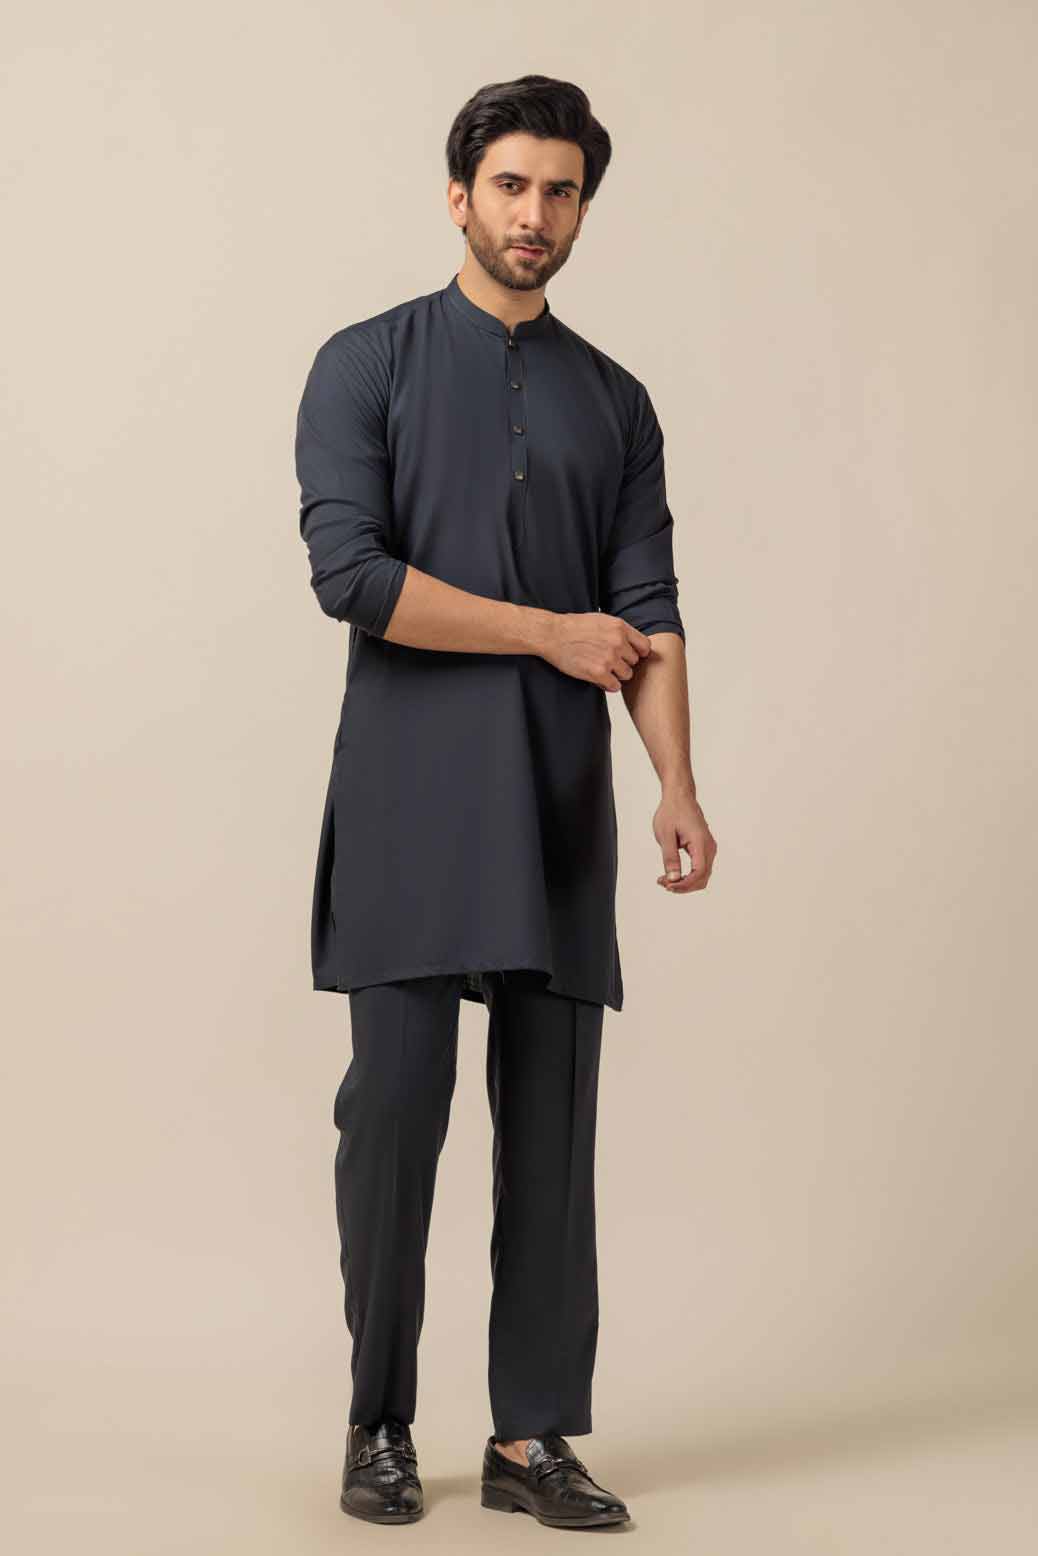 Black shalwar suit for men